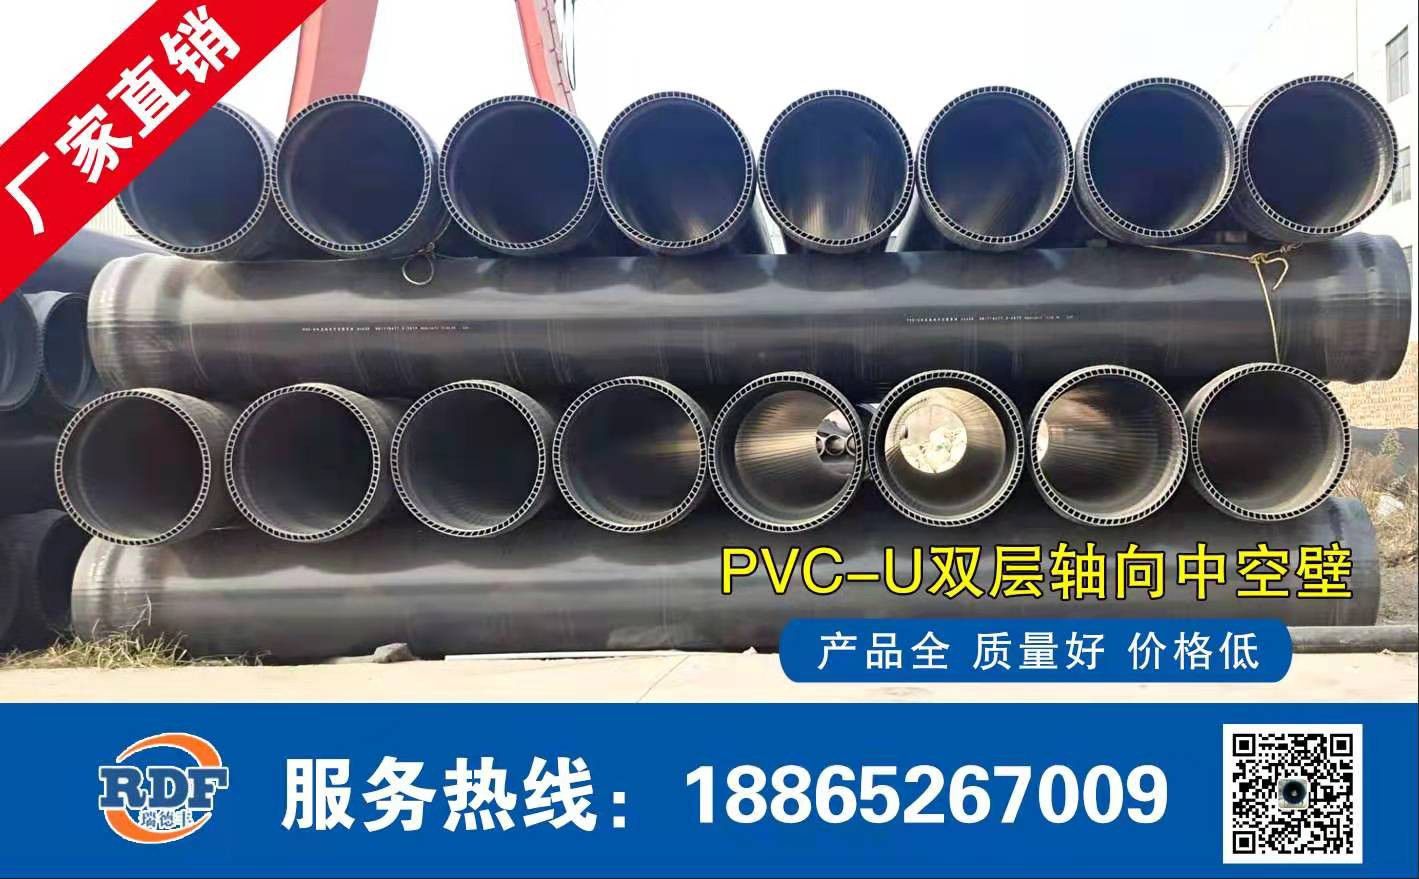 滁州凤阳县PVC-UH给水管是多少